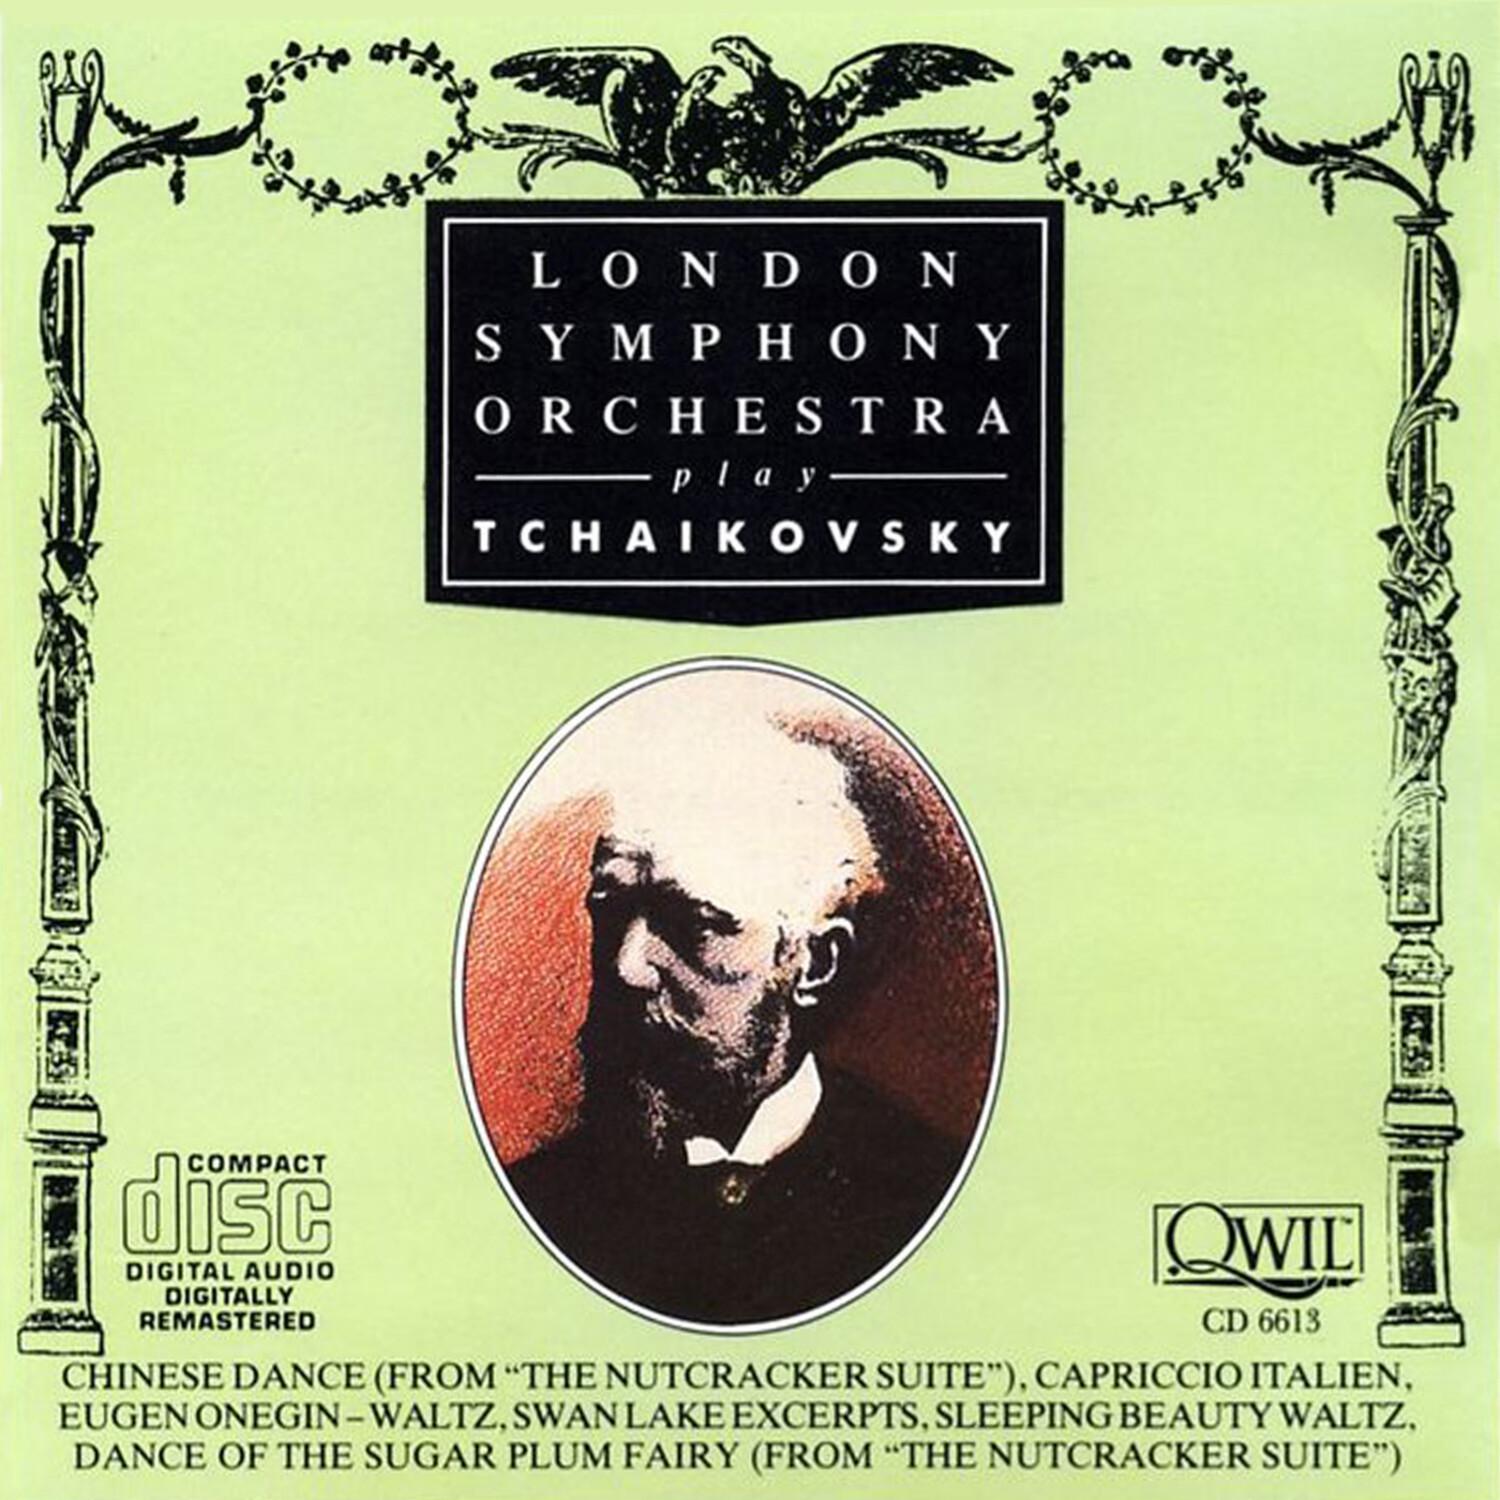 London Symphony Orchestra Plays Tchaikovsky